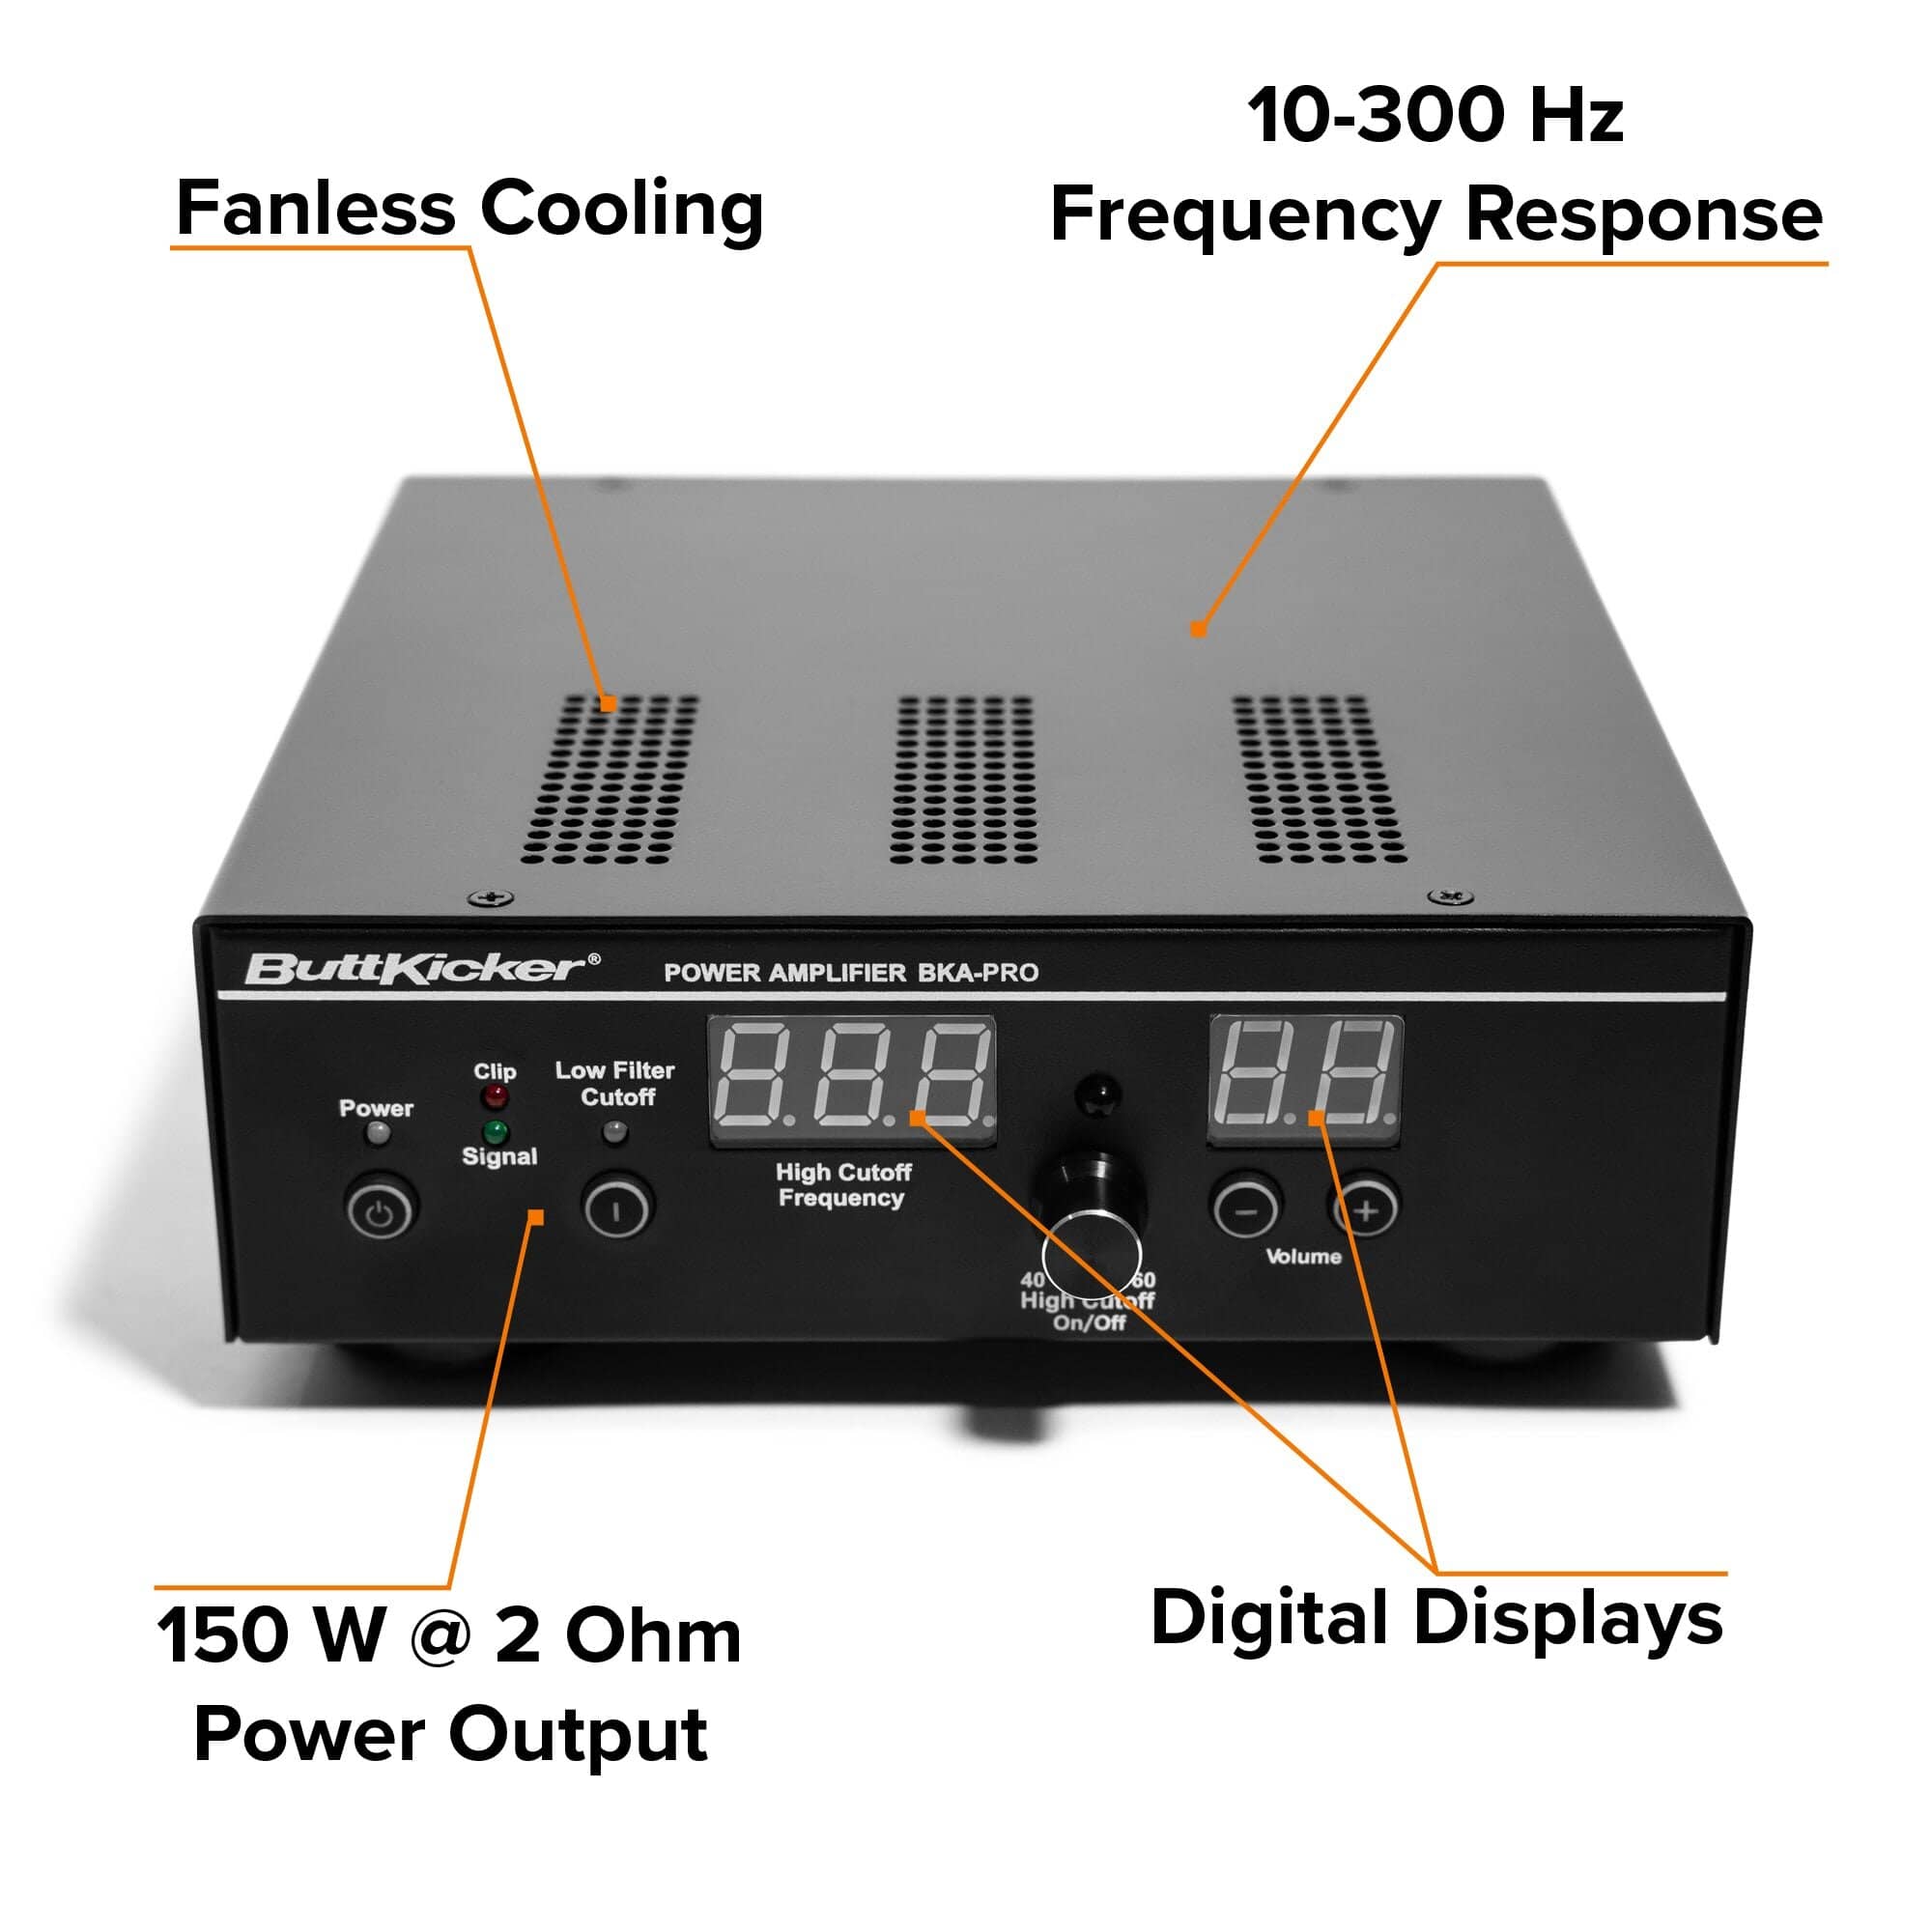 ButtKicker Power Amplifier BKA-Pro